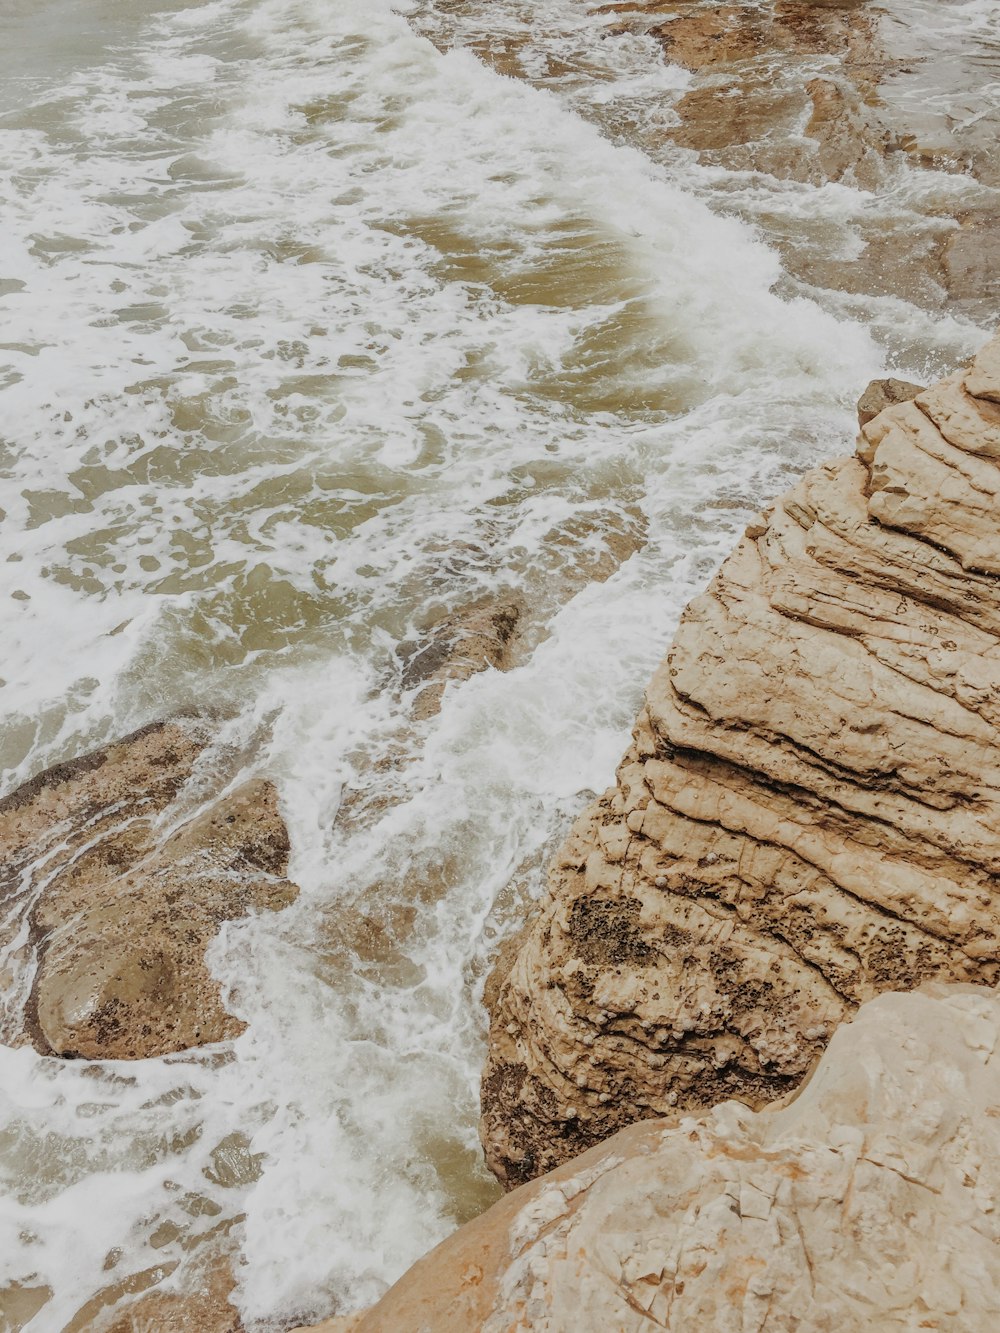 body of water beside rock formation